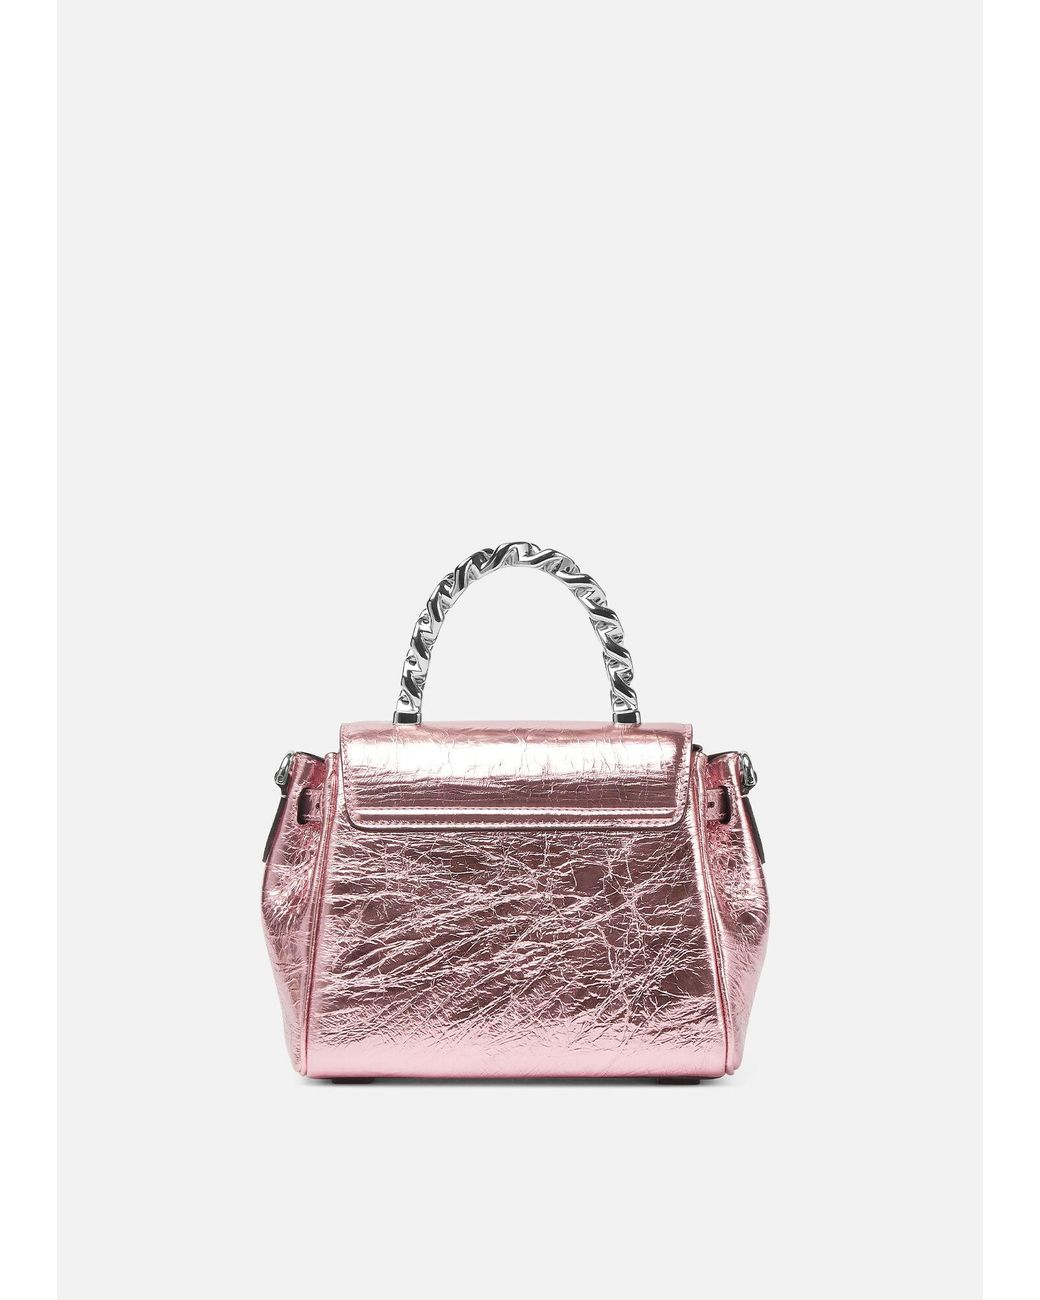 Croc La Medusa Small Handbag Pink